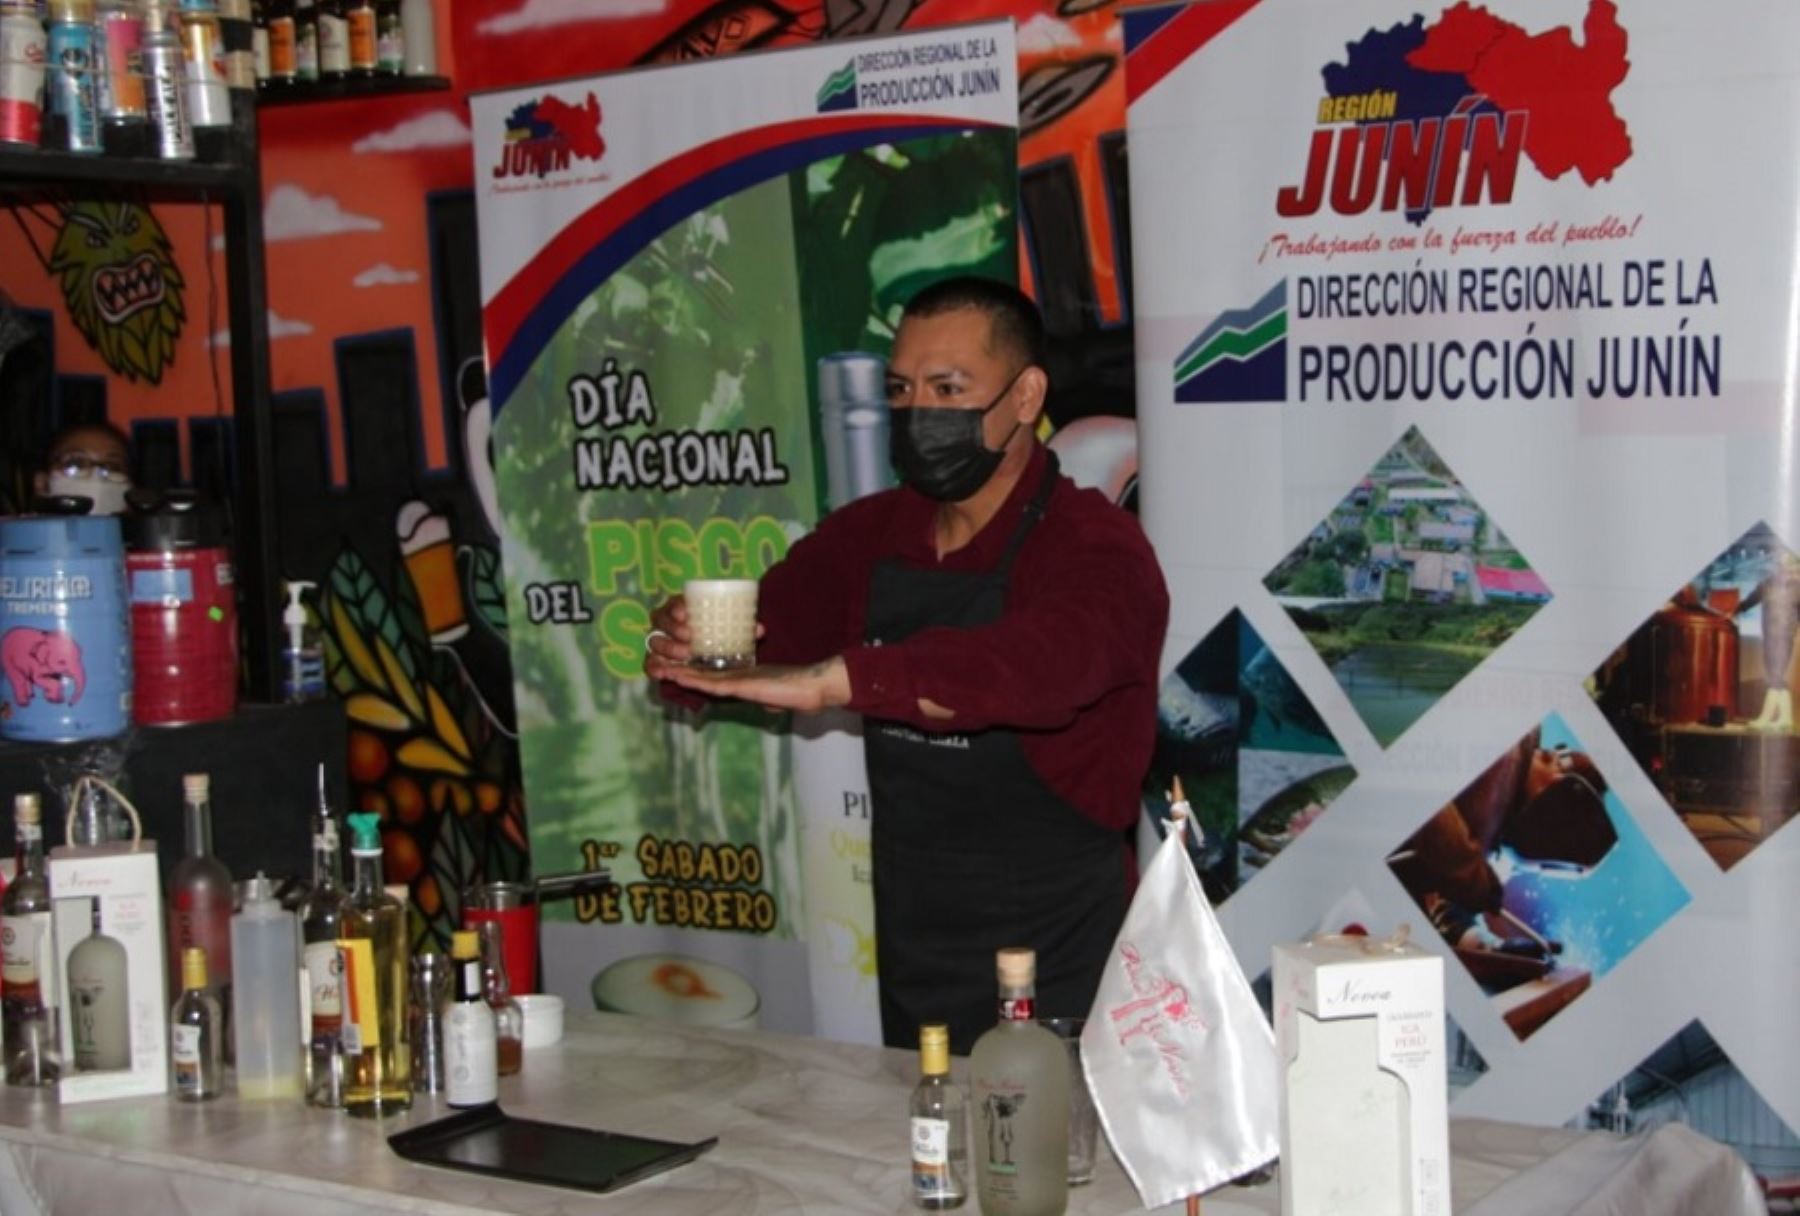 La creatividad de los bartenders huancaínos se puso de manifiesto durante la celebración del Día del Pisco Sour, utilizando productos oriundos de la región Junín con los cuales prepararon variantes del cóctel de bandera.